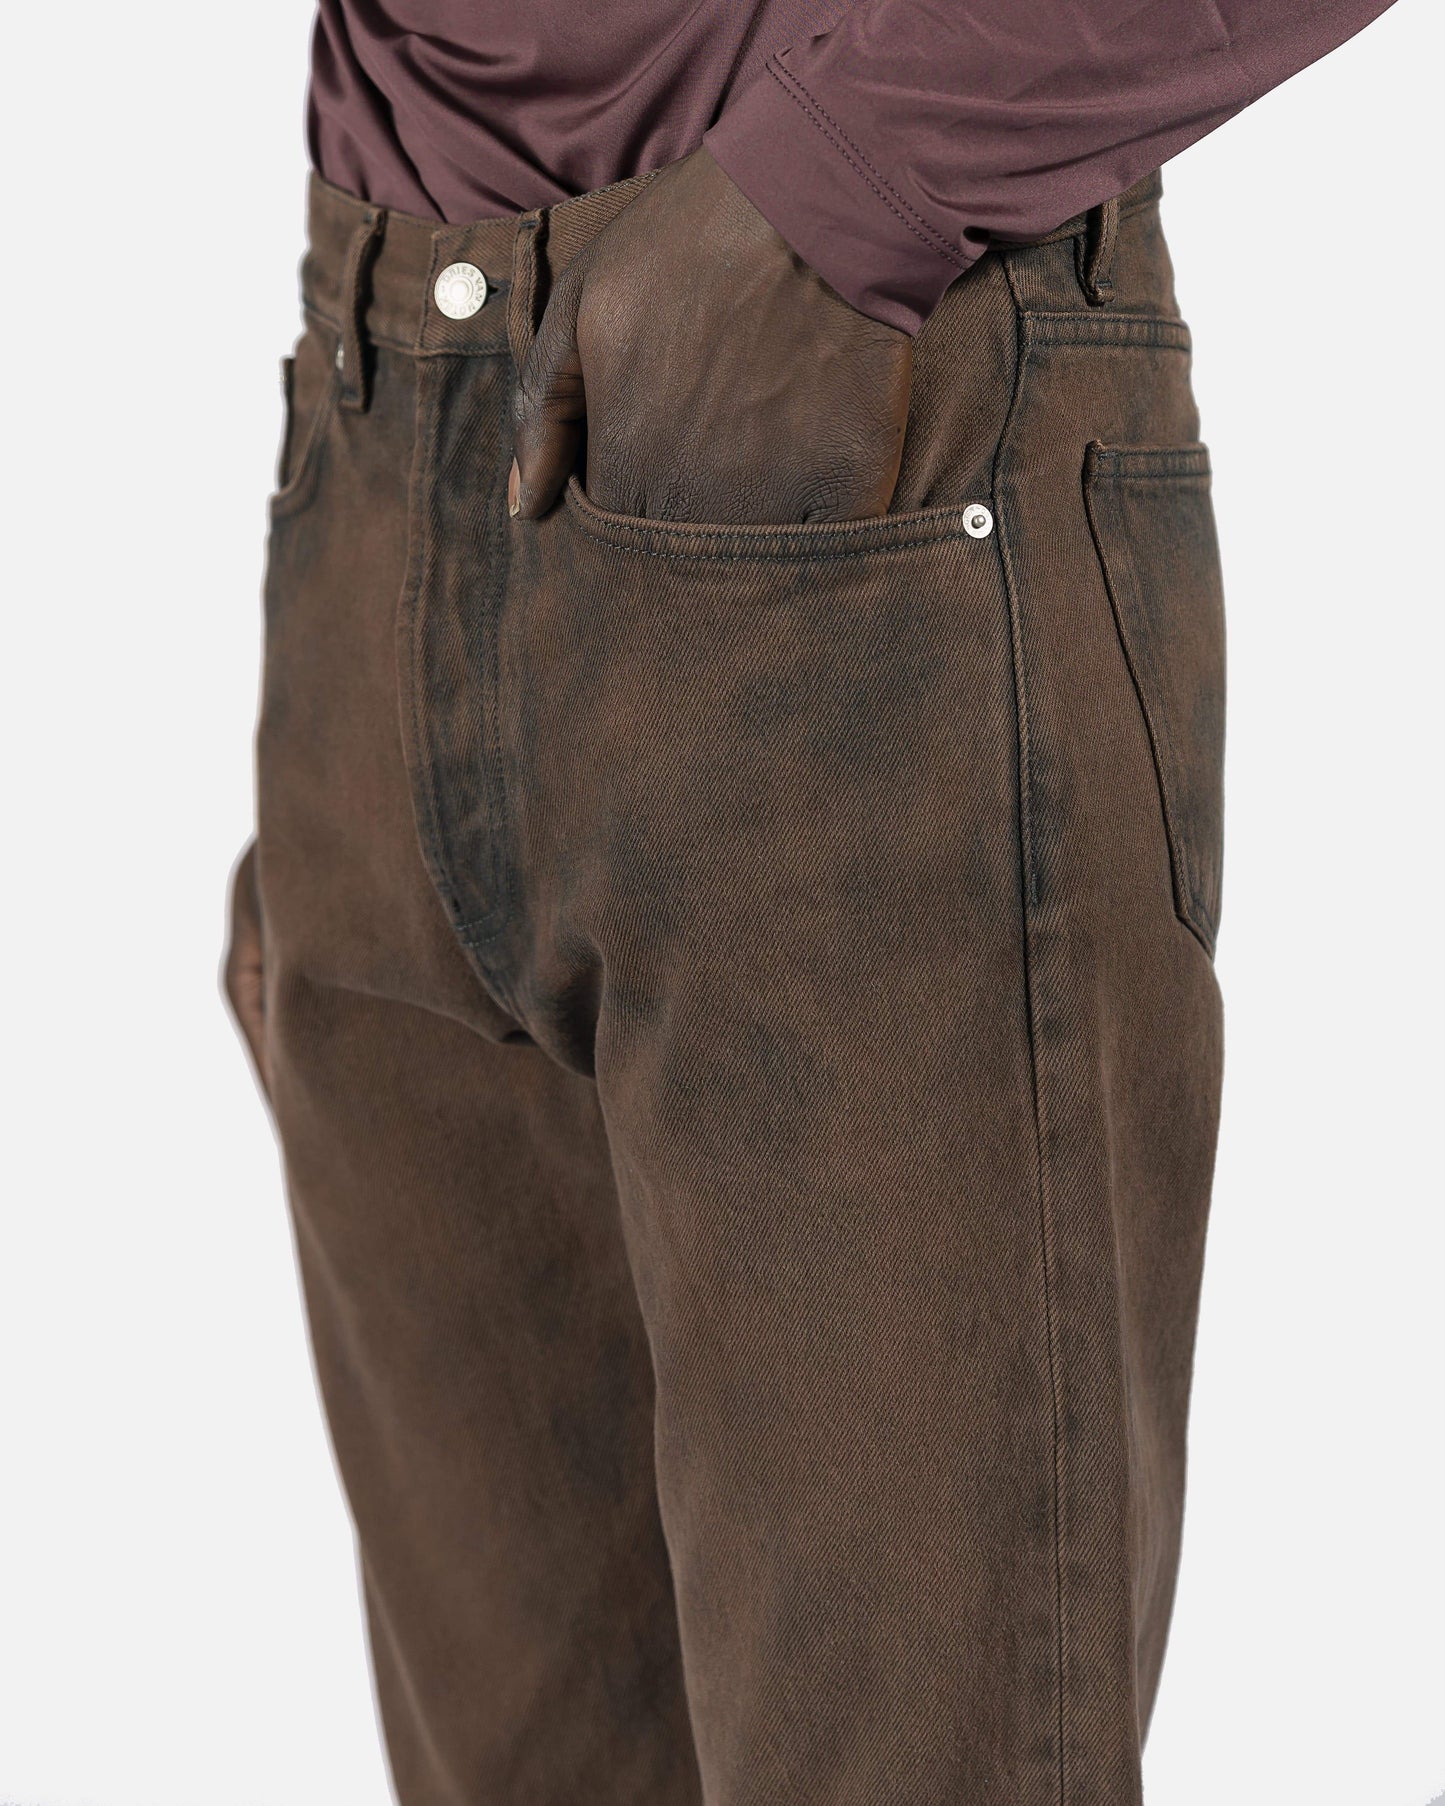 Dries Van Noten Men's Pants Penna Pants in Washed Brown